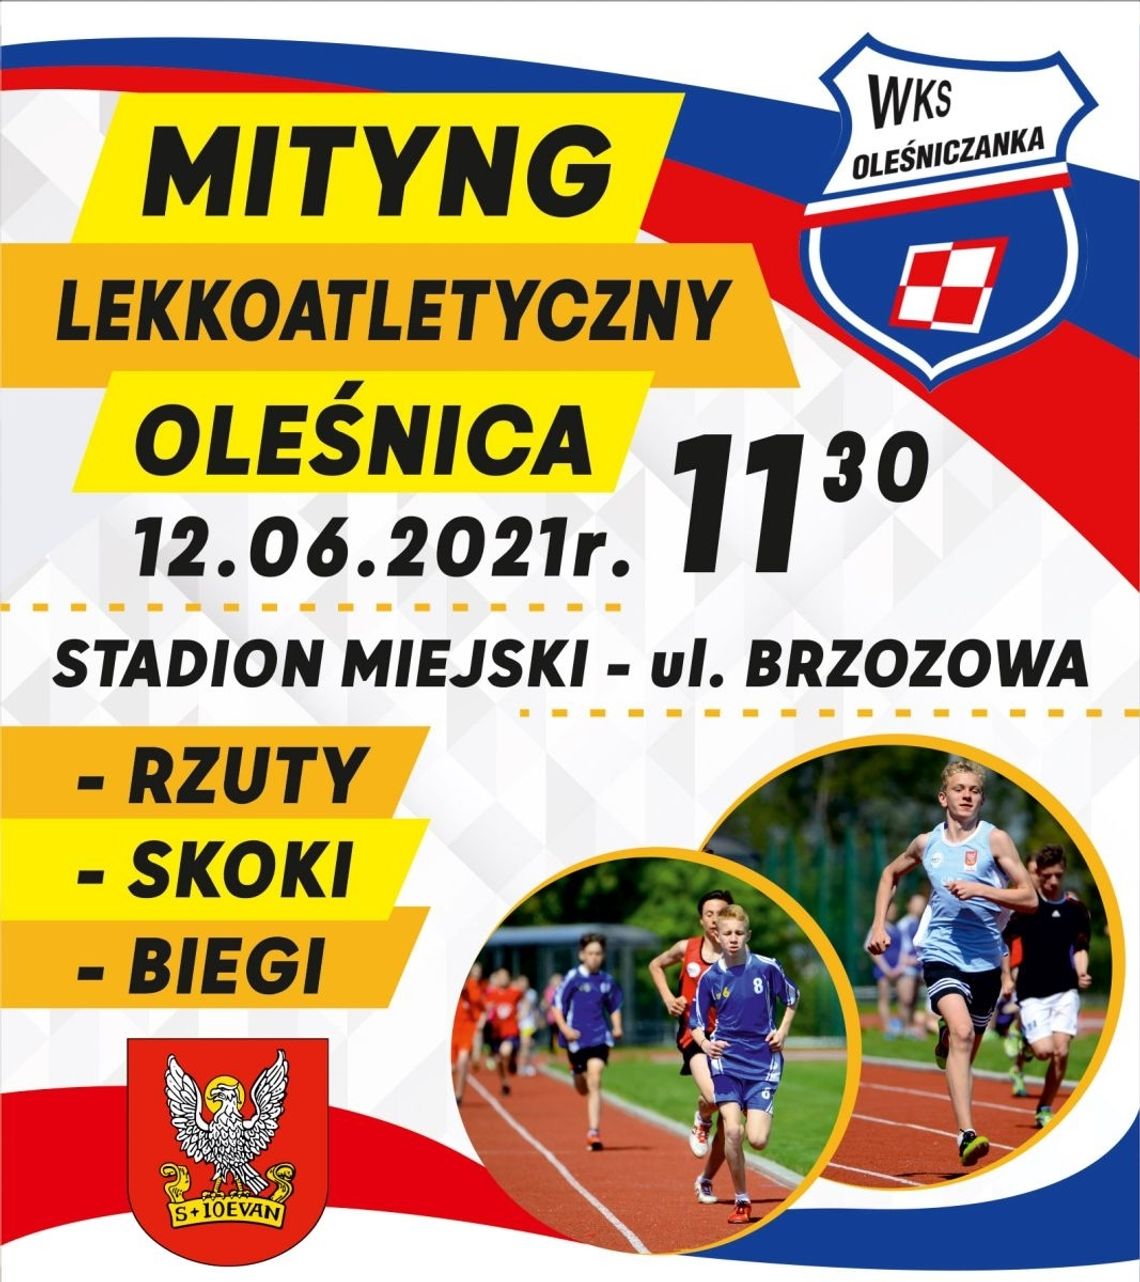 Miting lekkoatletyczny na Brzozowej w Oleśnicy